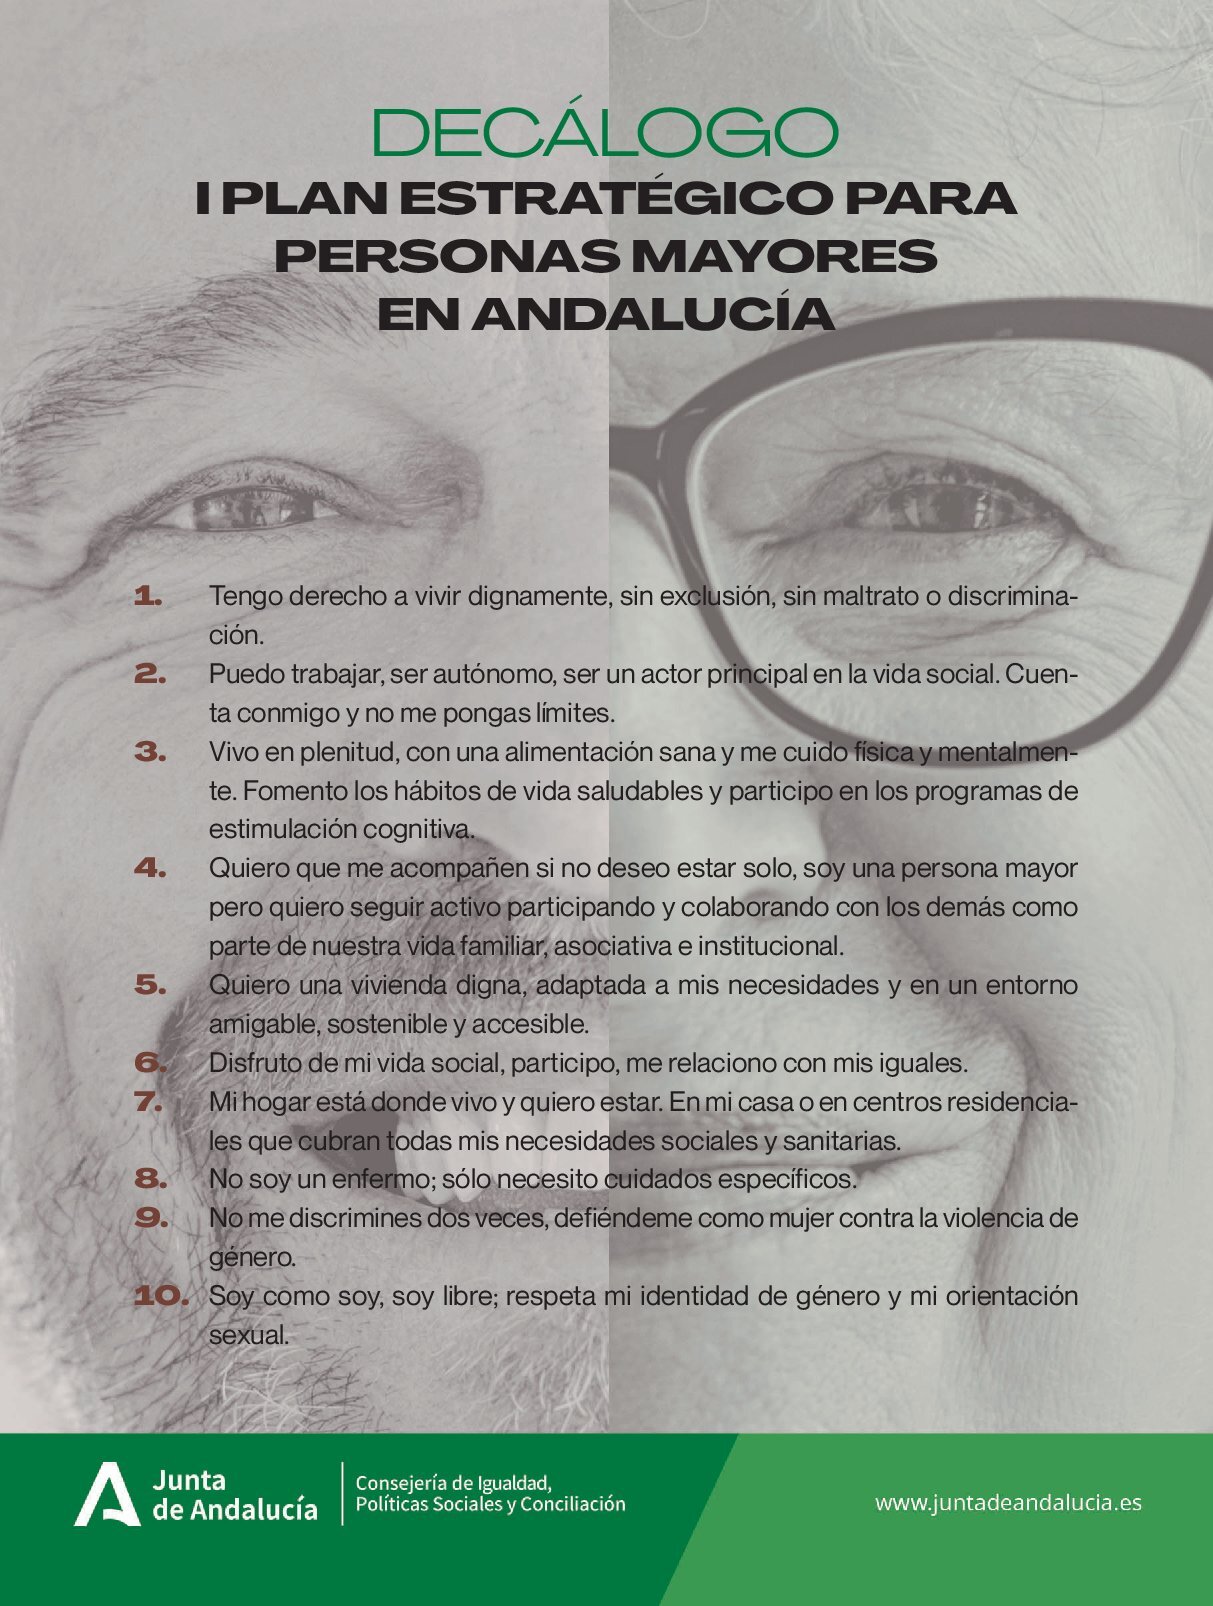 Decálogo. I Plan Estratégico para Personas Mayores en Andalucía.